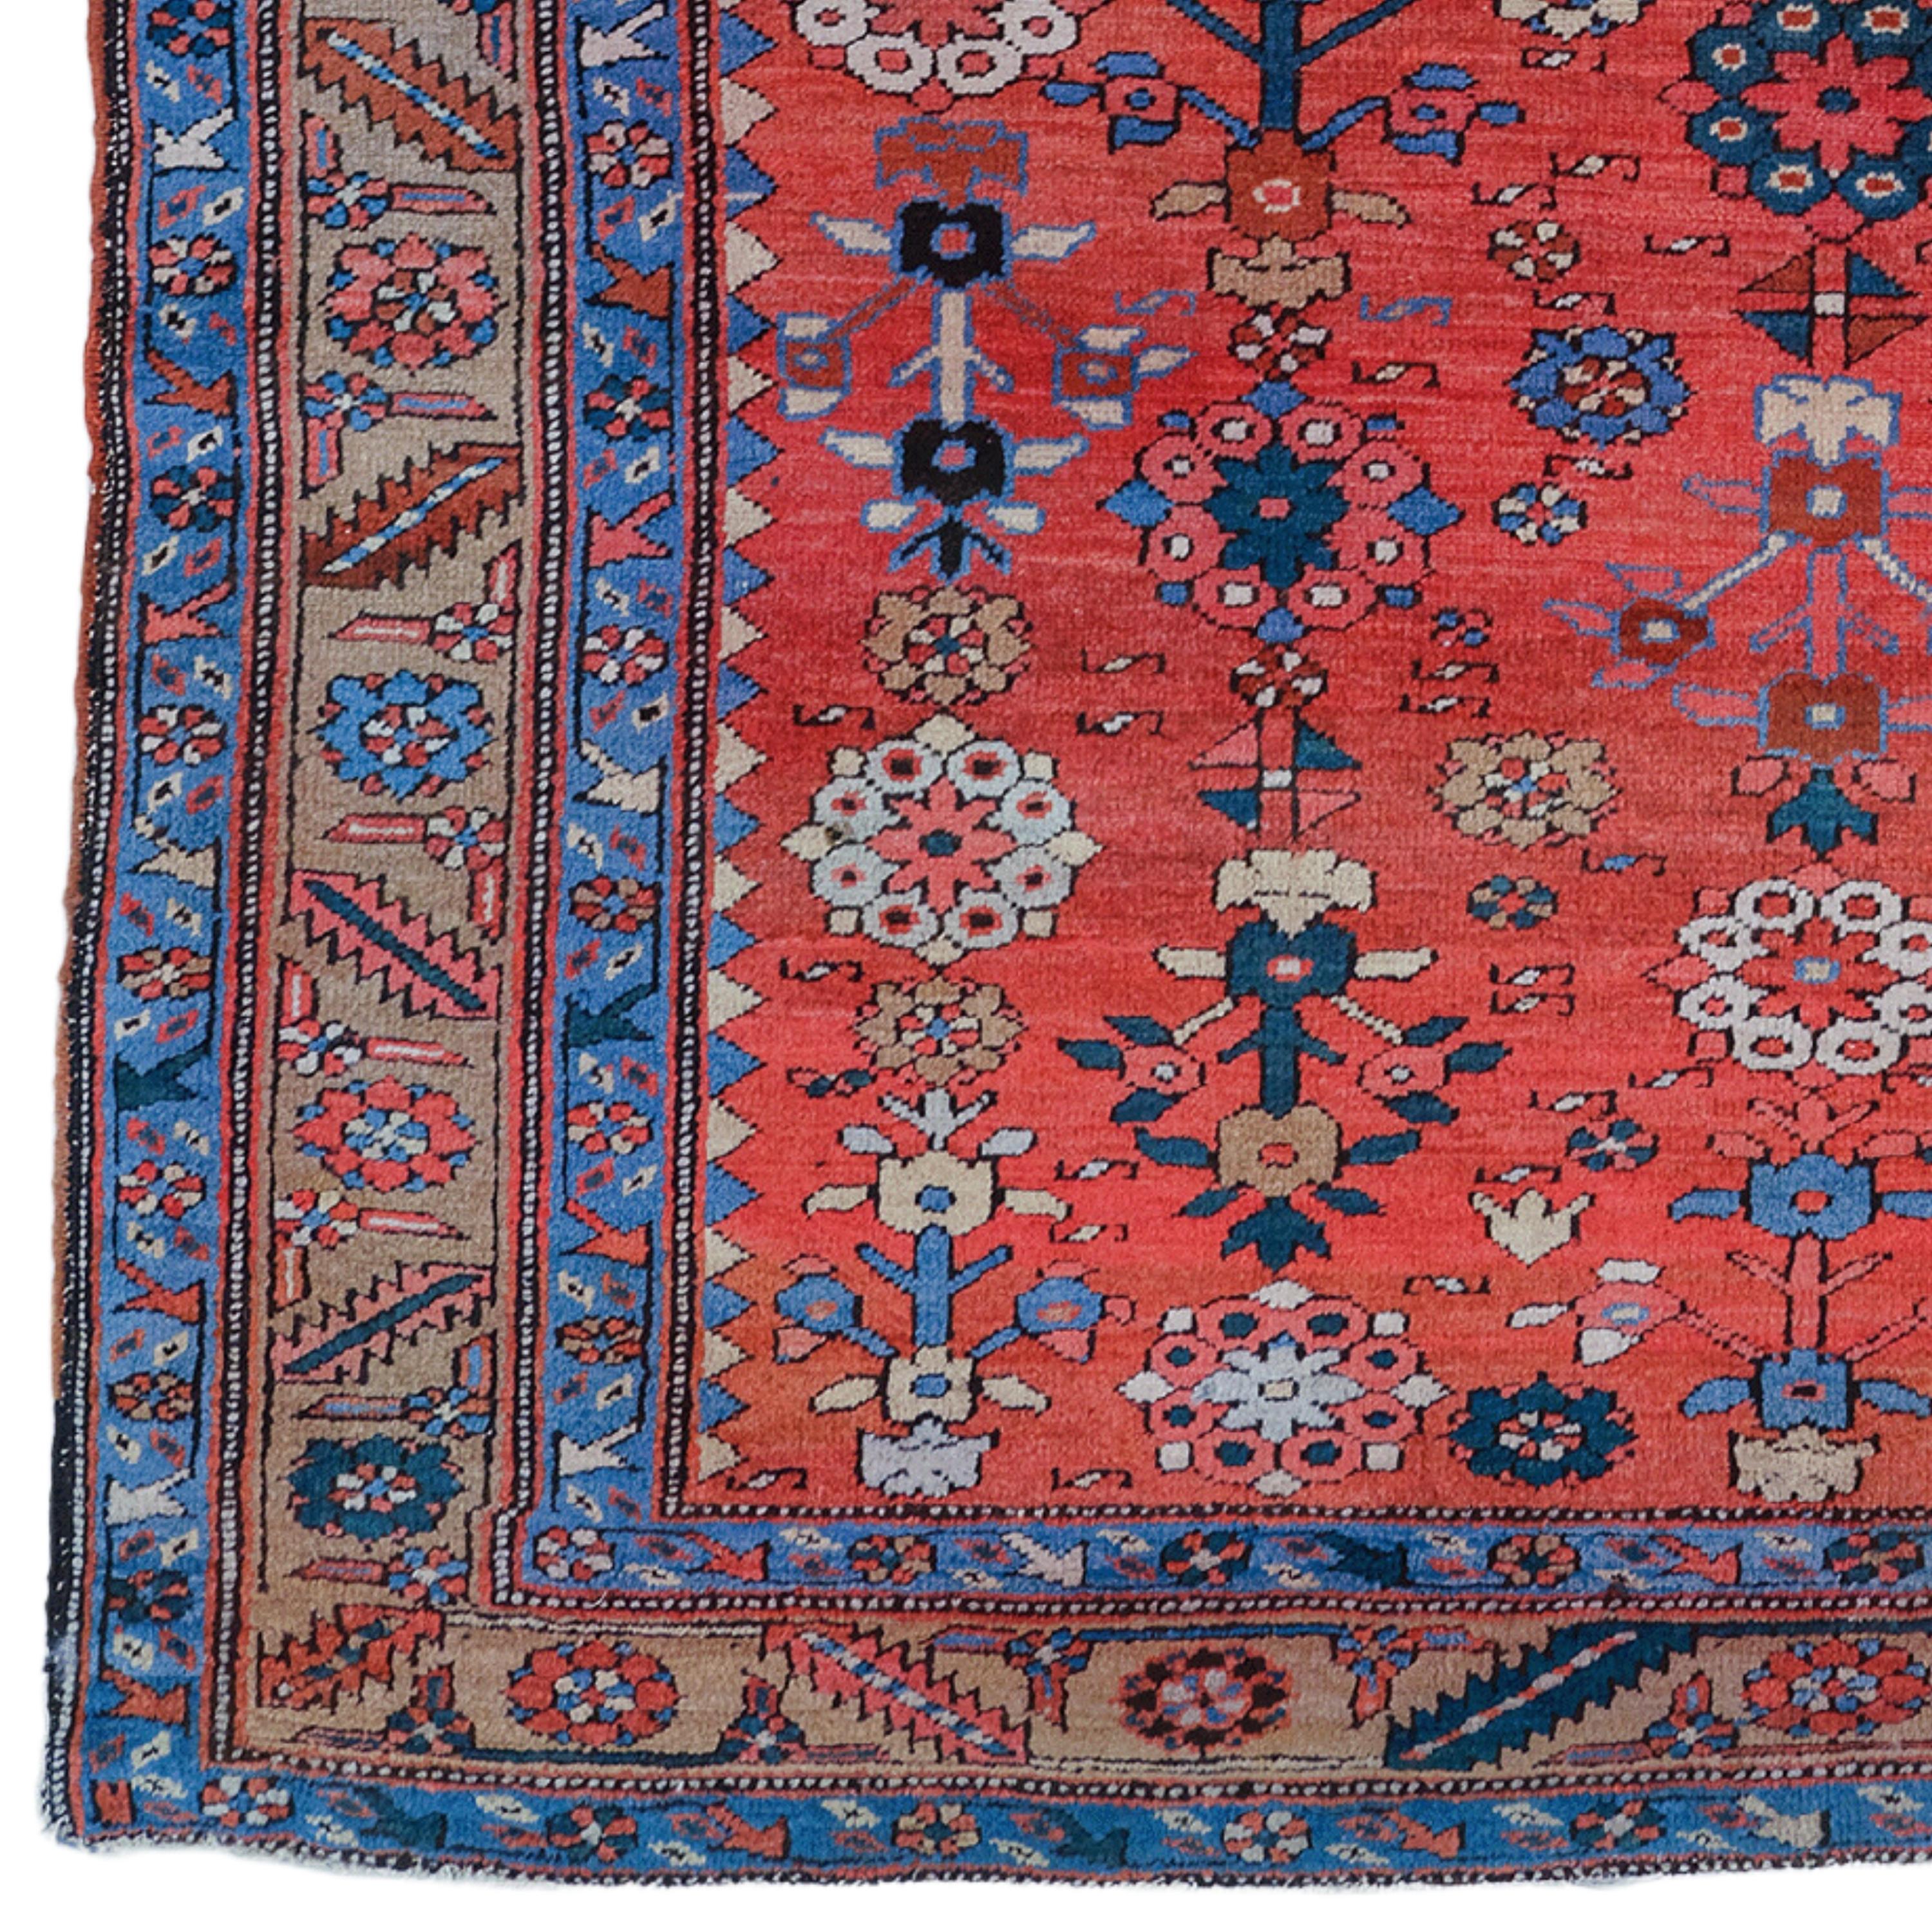 Dieser exquisite antike Bakhsaish-Teppich ist ein Meisterwerk, das den künstlerischen Reichtum und die meisterhafte Handwerkskunst des 19. Jahrhunderts zeigt. Dieses sorgfältig aus Wolle gewebte Werk spiegelt die kulturelle Vielfalt seiner Zeit